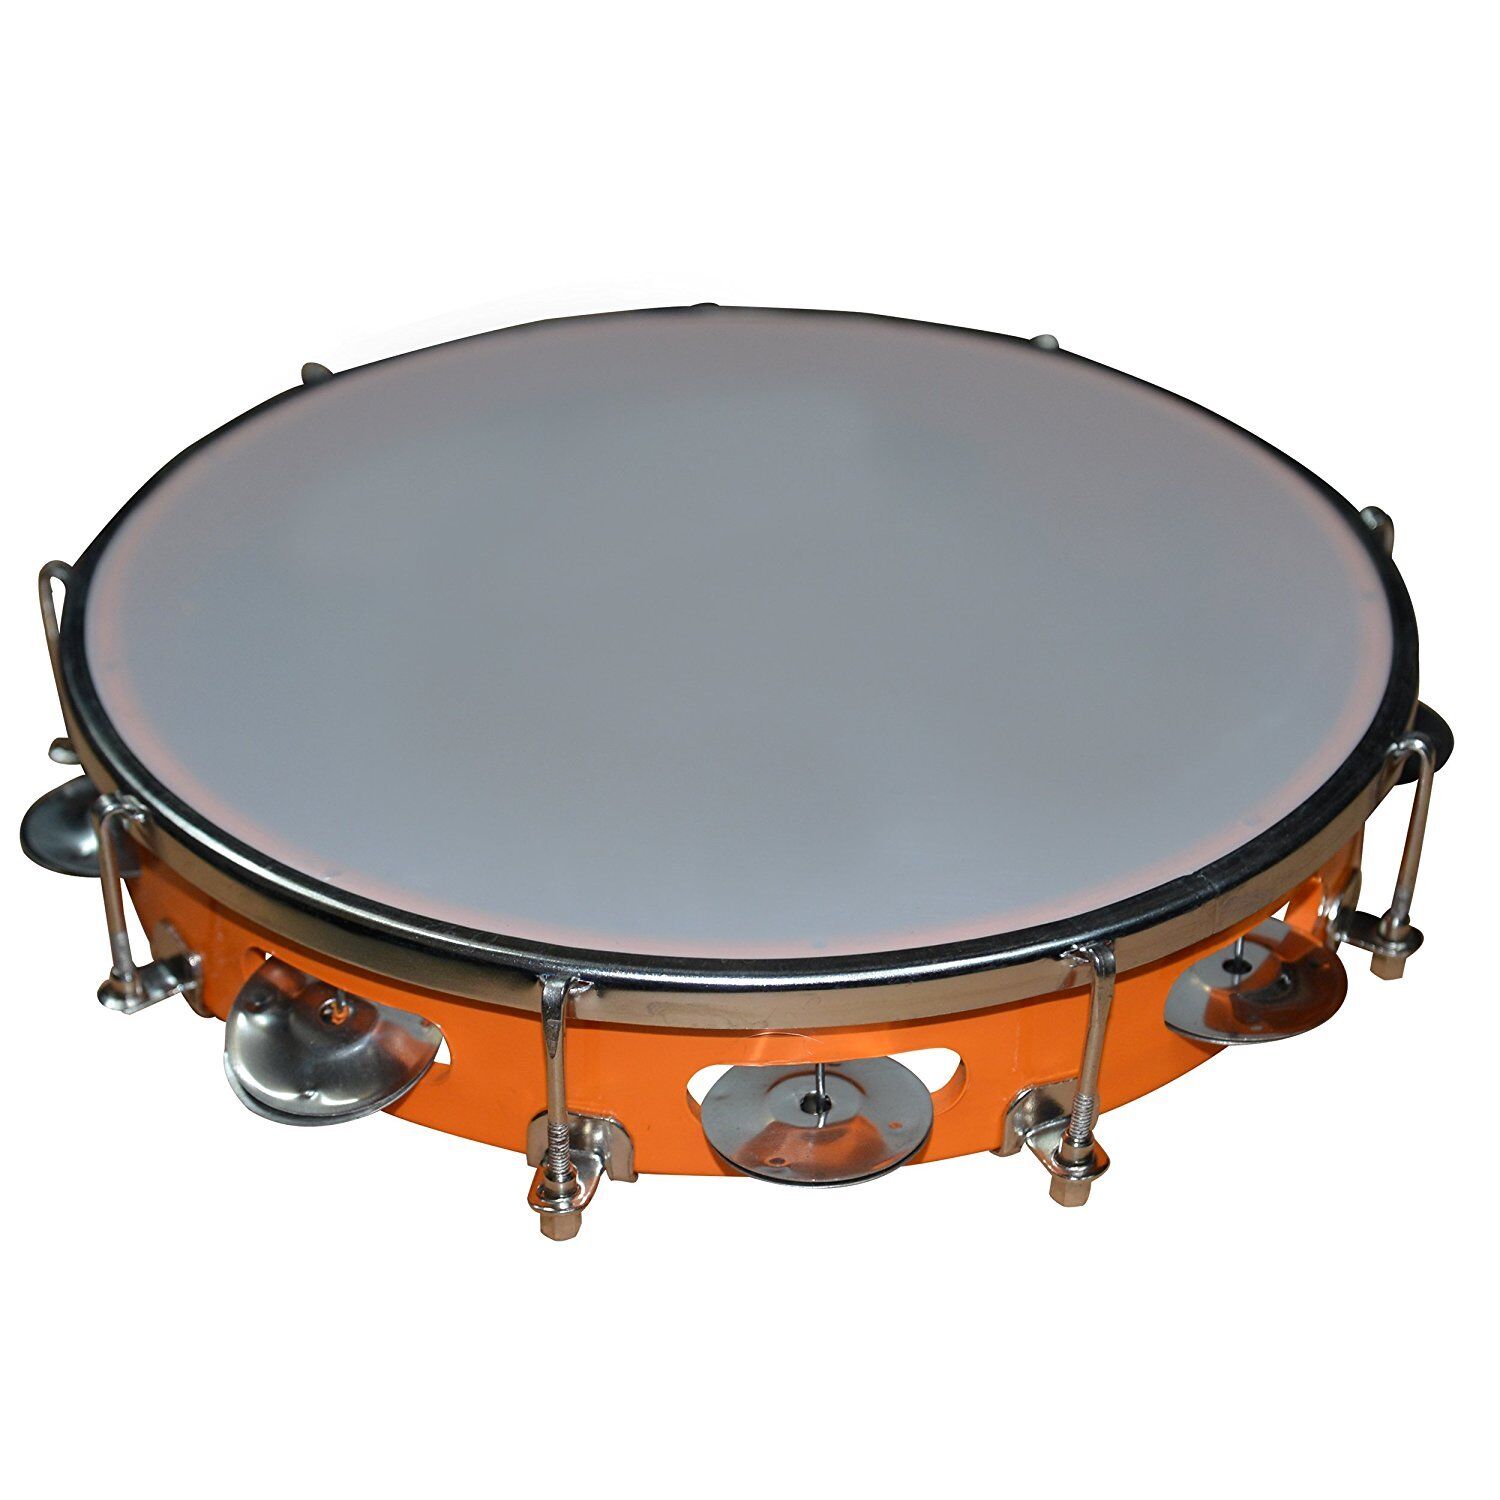 Tambourine With Head Aluminium Tambourine Hand Percussion Musical Instrument